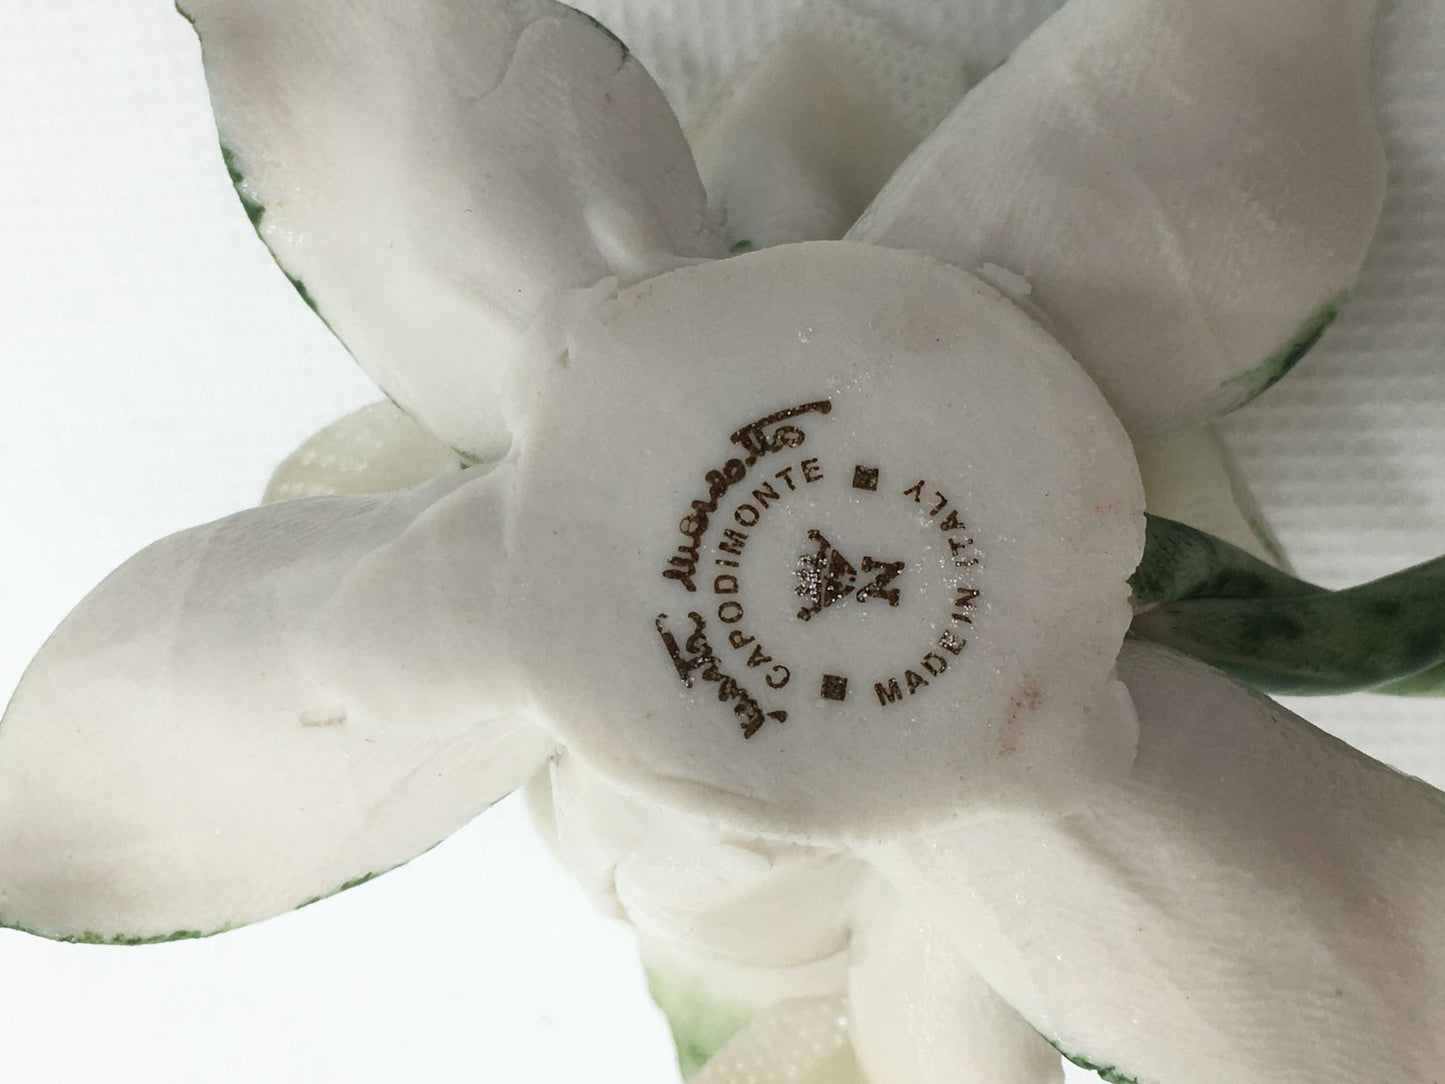 Caspò con calla in ceramica di Capodimonte, fatto e decorato a mano. Firmato da Marta Marzotto, made in Italy. Dimensioni: cm 7 x 6 x 5 h